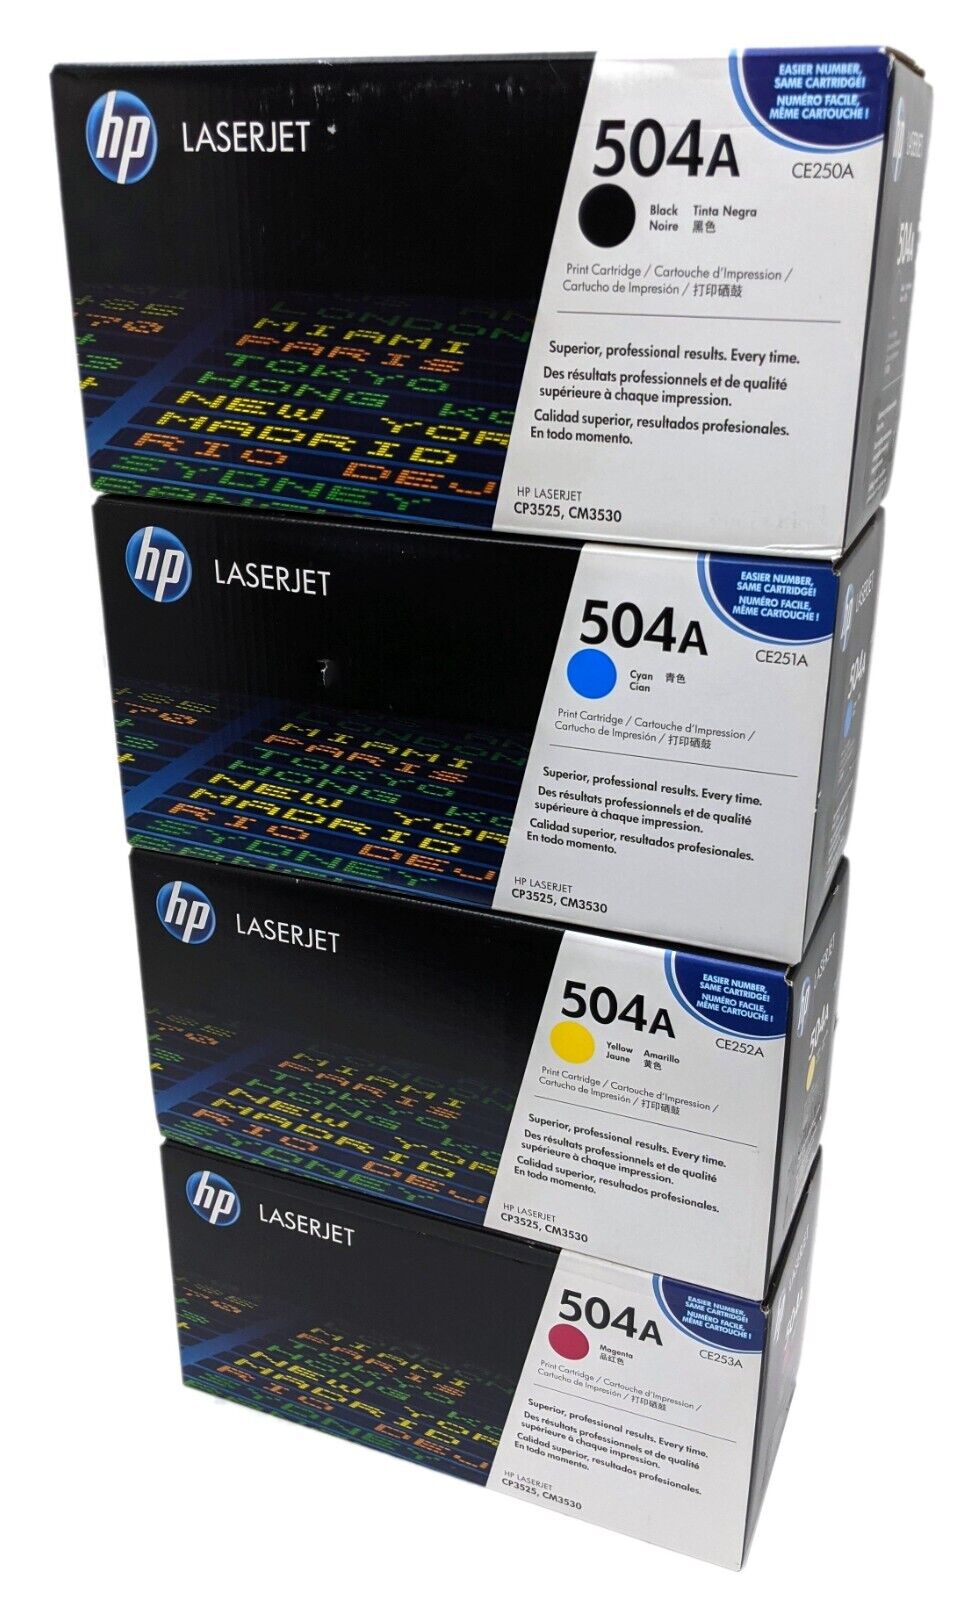 NEW HP LaserJet 504A Toner Cartridge Set (CMYK) CE250A CE251A CE252A CE253A OEM